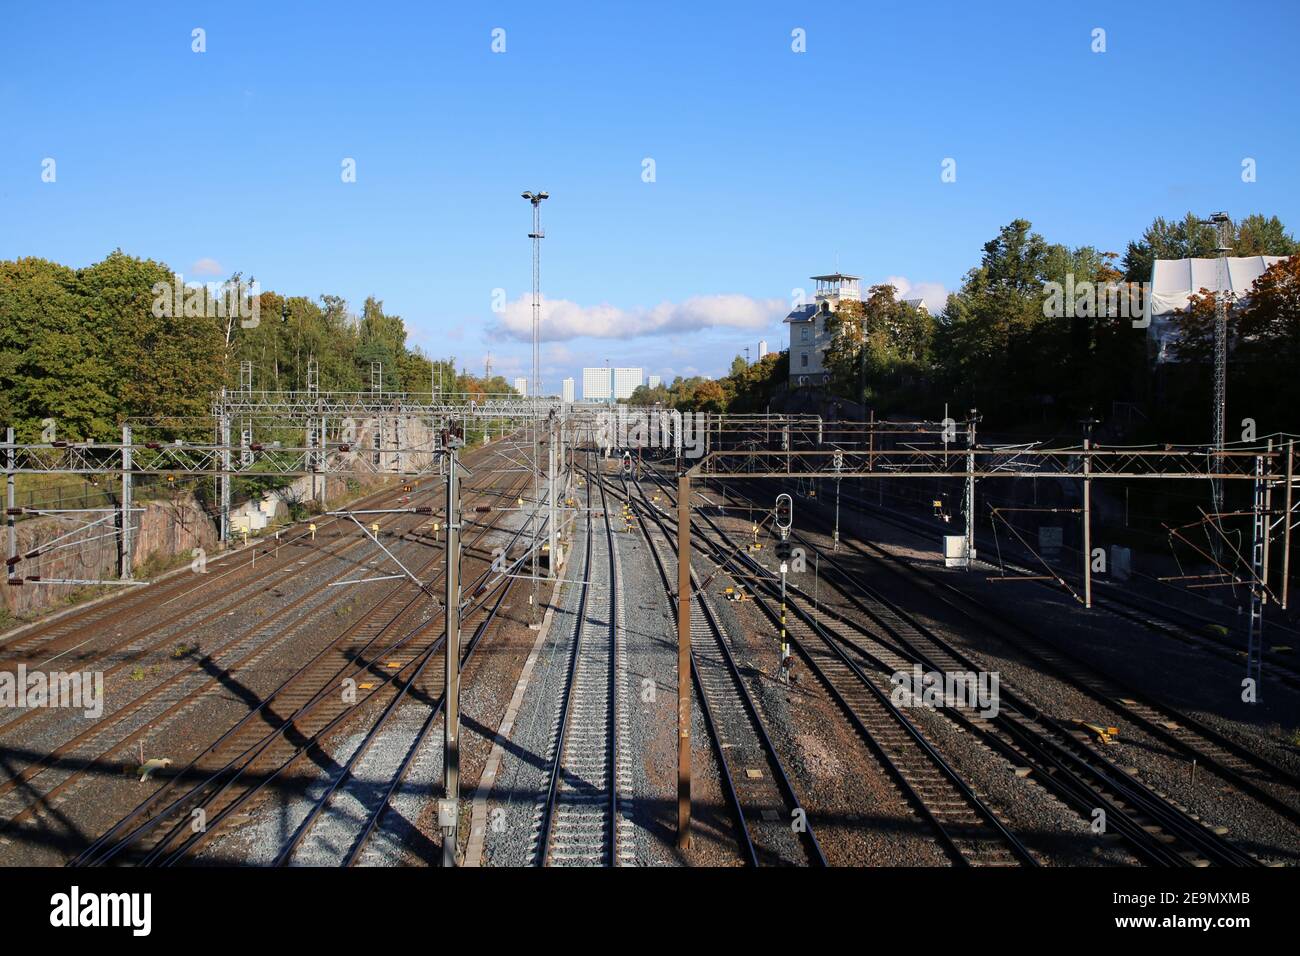 Chemin de fer à Helsinki, Finlande. Photographié sept. 2019. Plusieurs voies de train avec lignes d'alimentation électrique, quelques arbres, ciel bleu et le Mall of Tripla. Banque D'Images